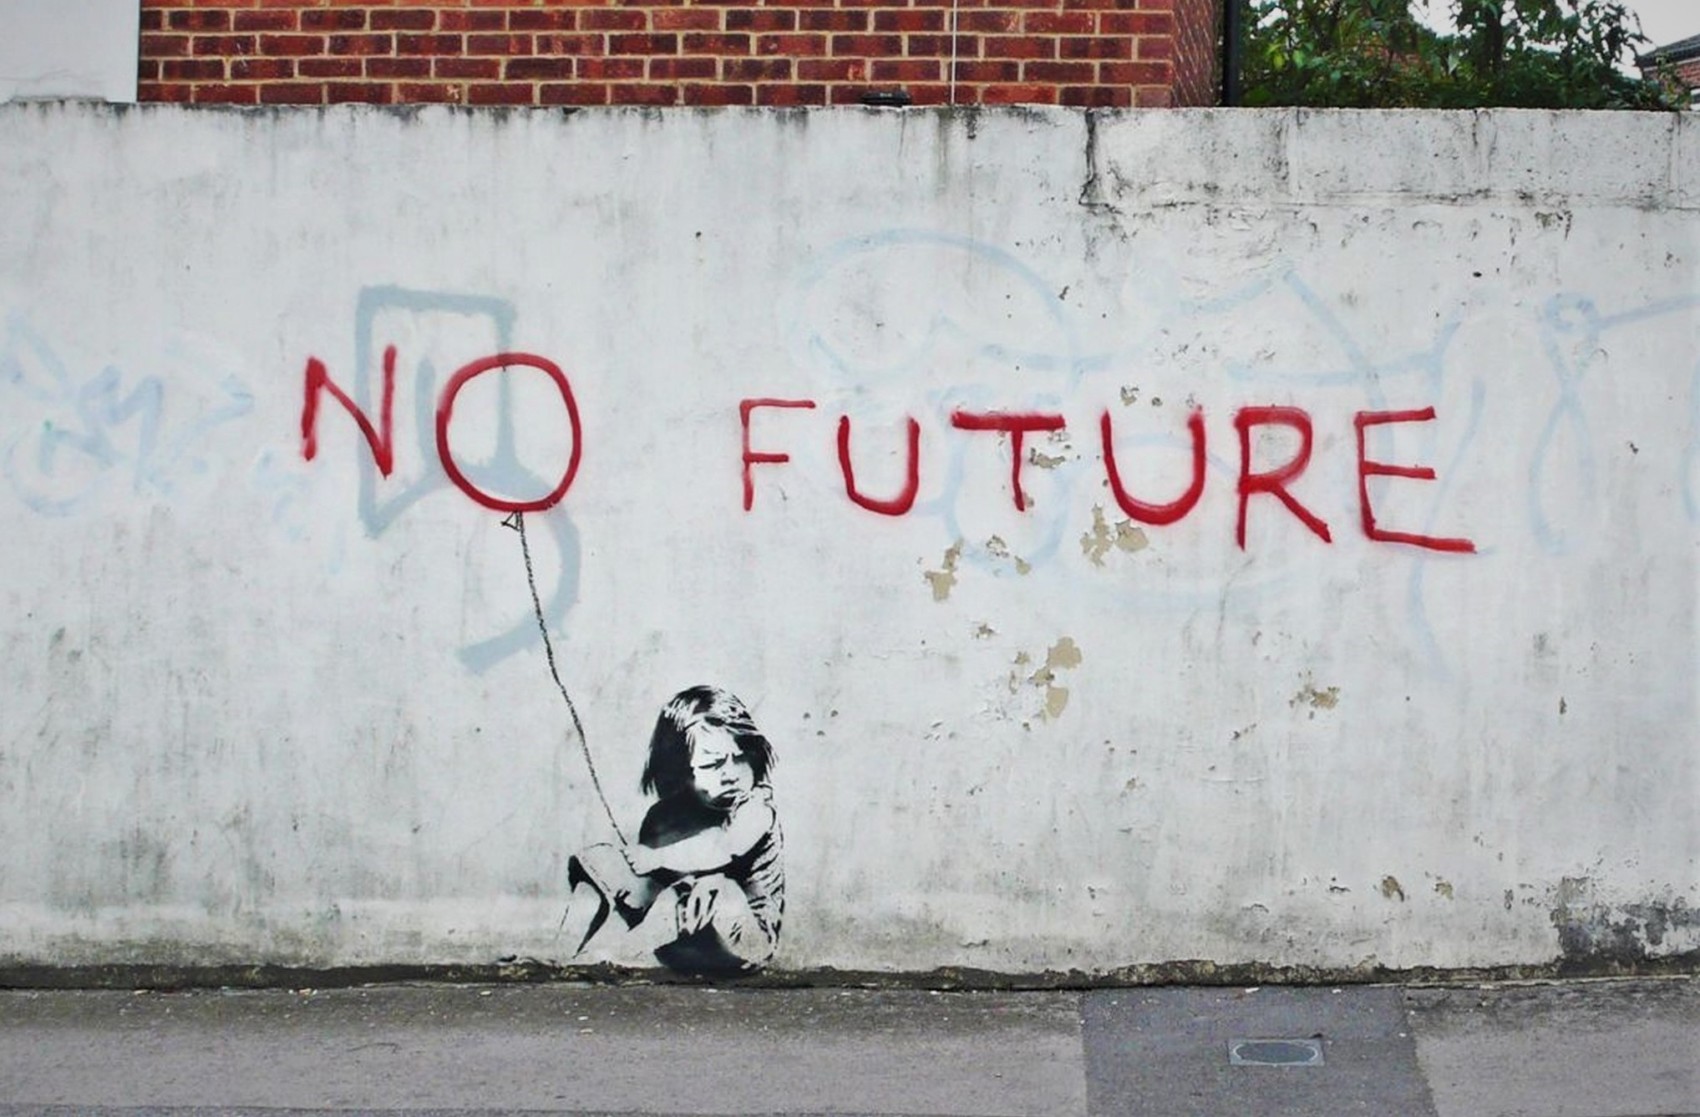 Banksy No future (2010). Southampton, UK